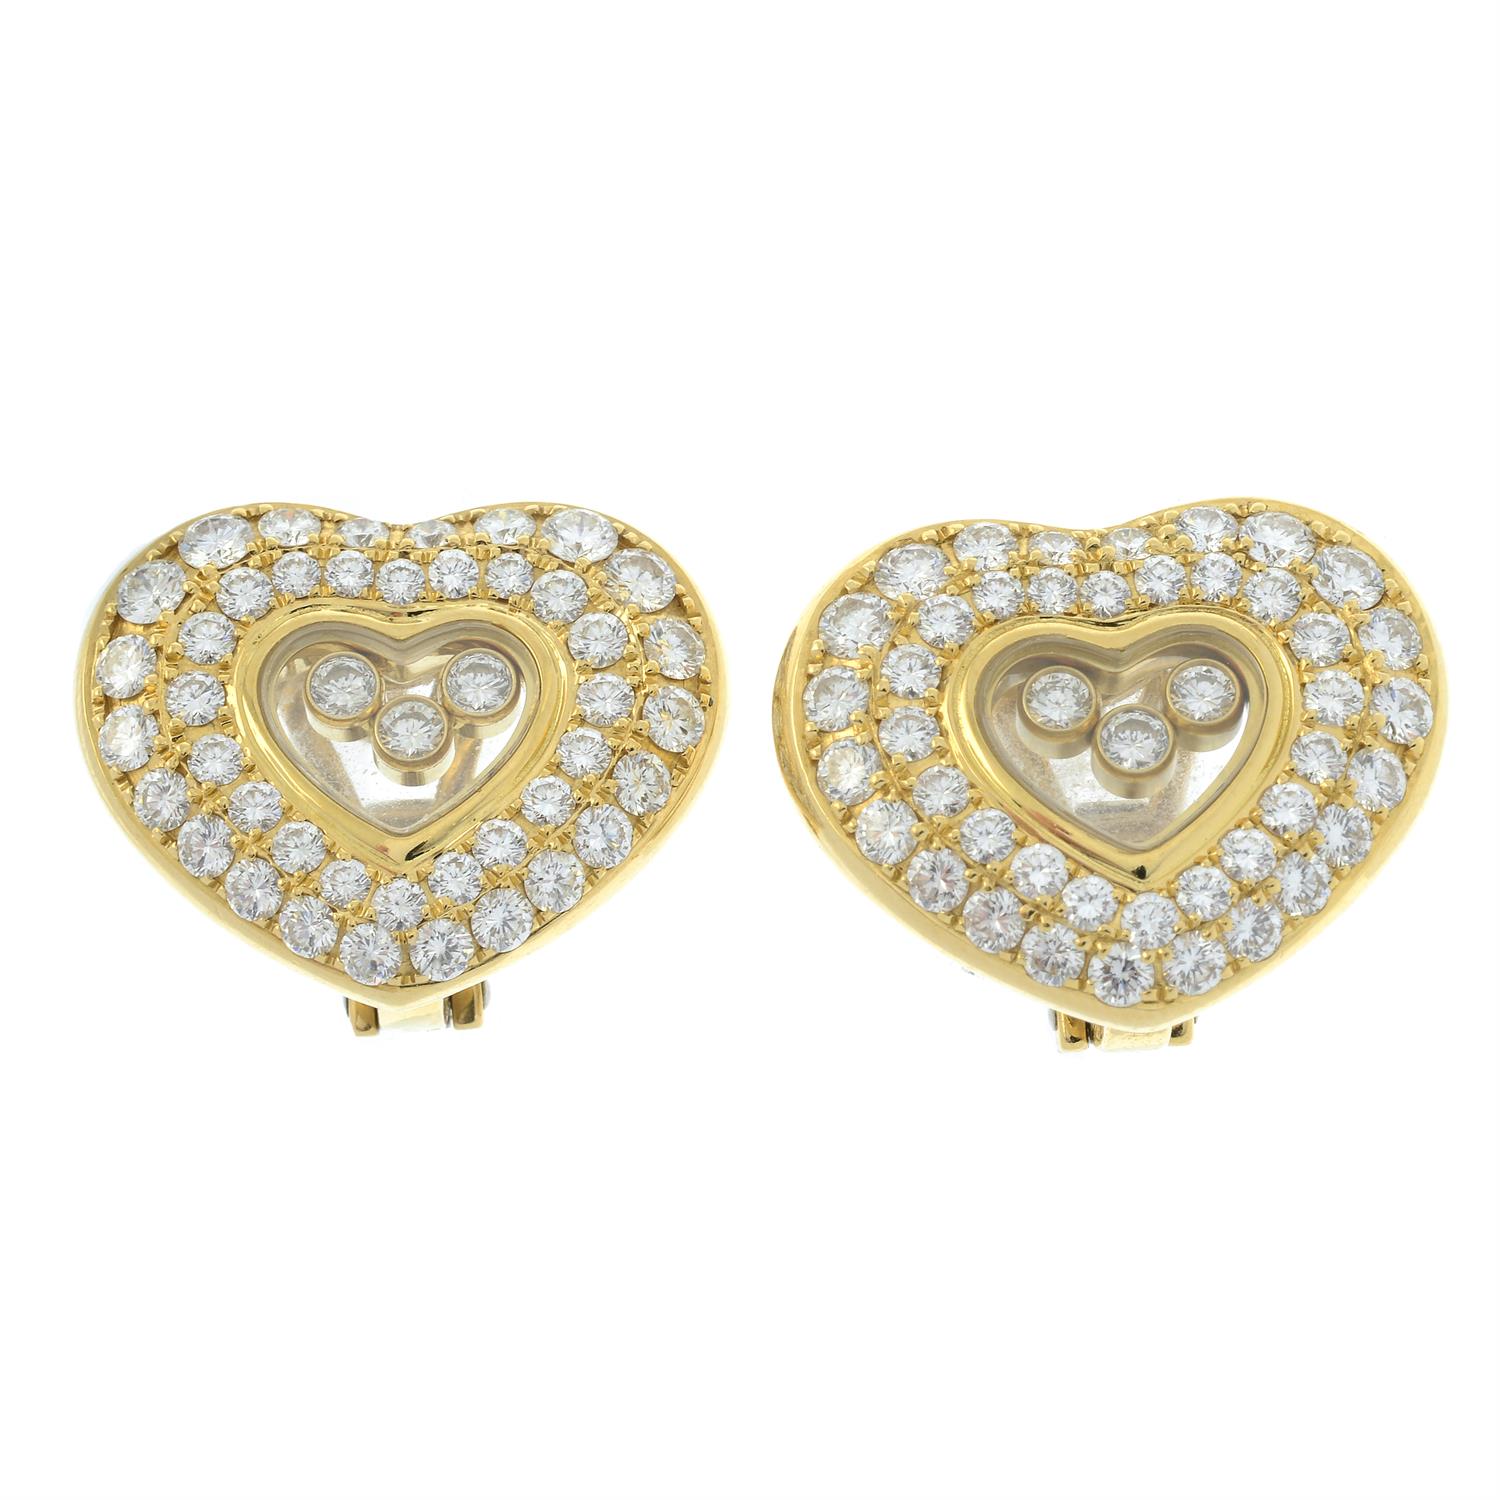 'Happy Diamond' heart earrings, by Chopard - Image 2 of 3